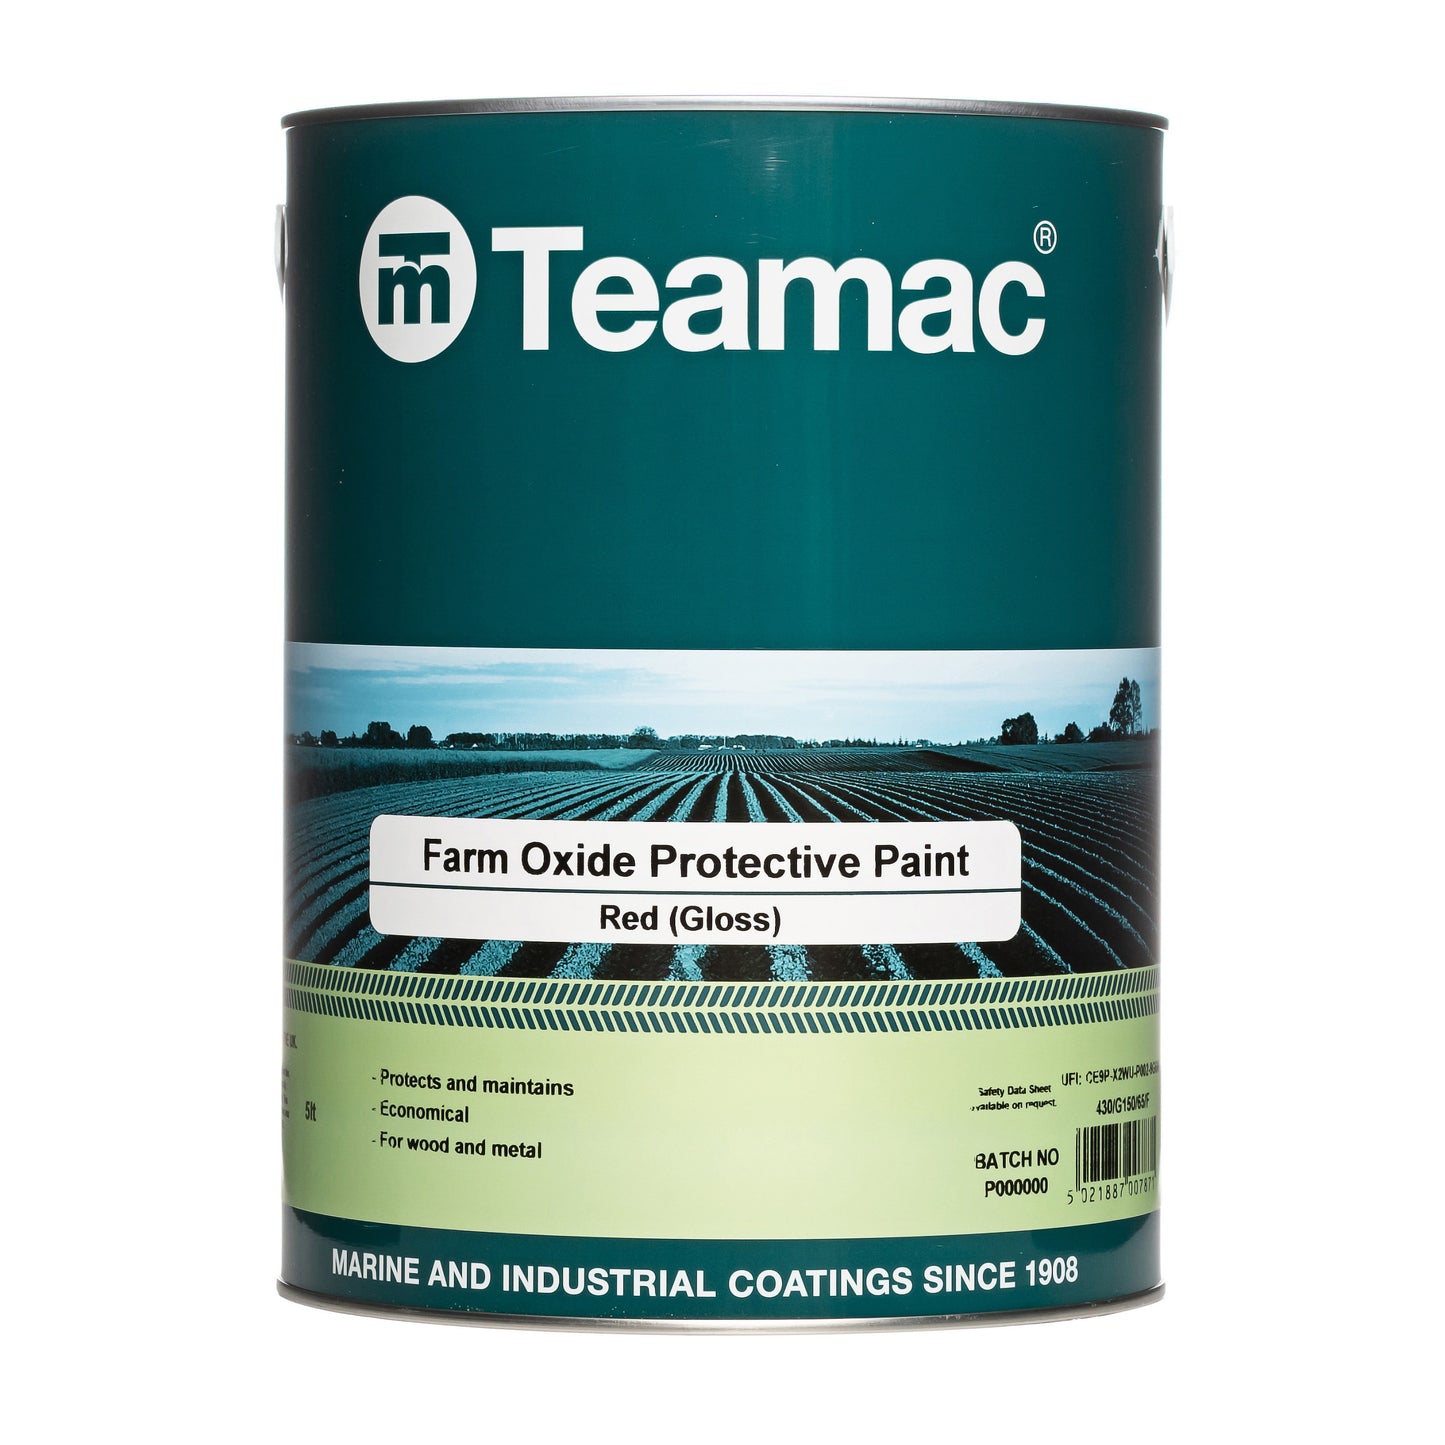 Teamac Farm Oxide Protective Paint 20L